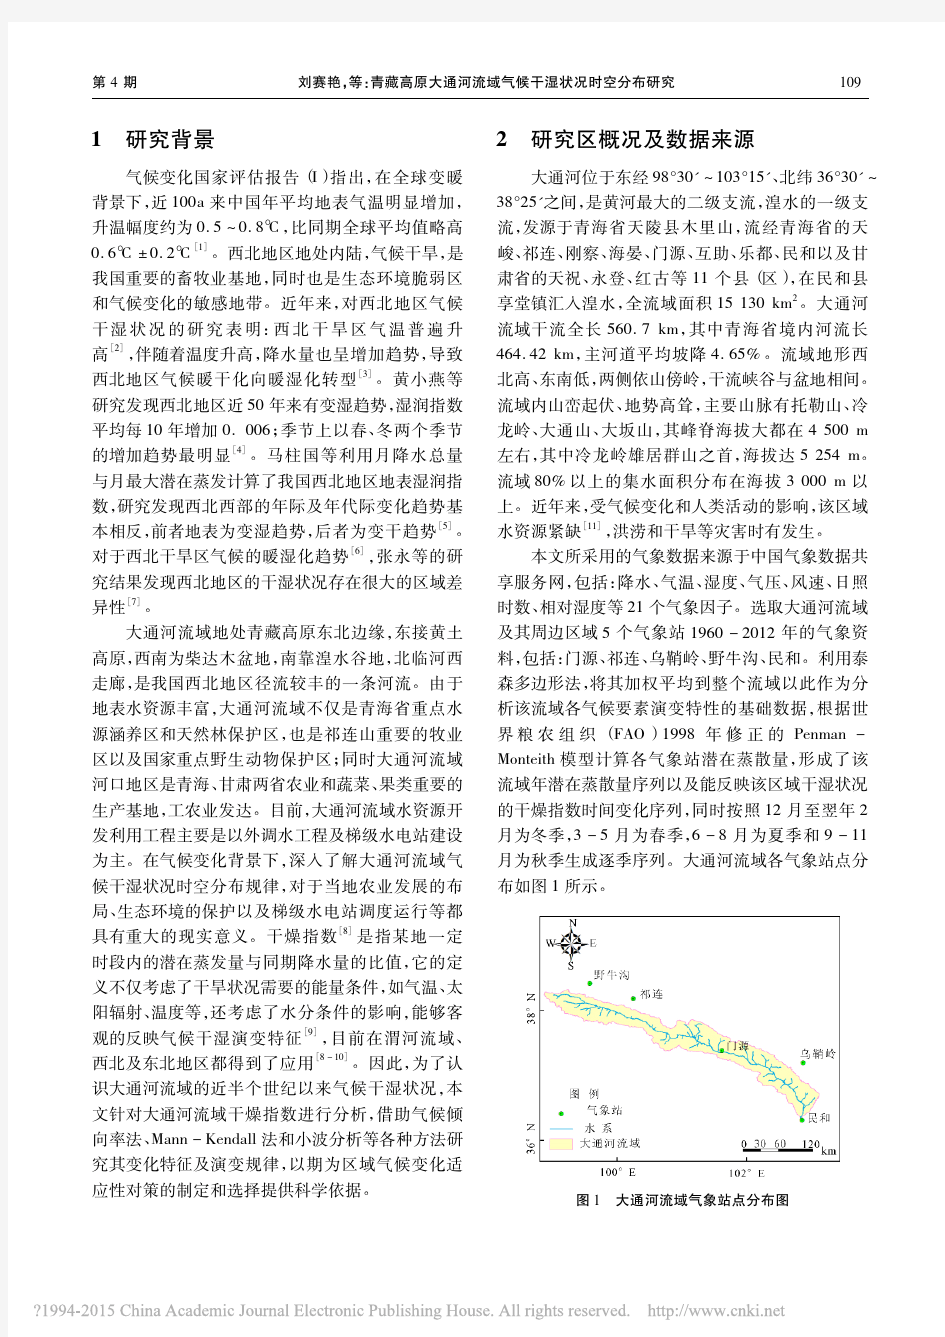 刘赛艳, et al_ (2015), 青藏高原大通河流域气候干湿状况时空分布研究